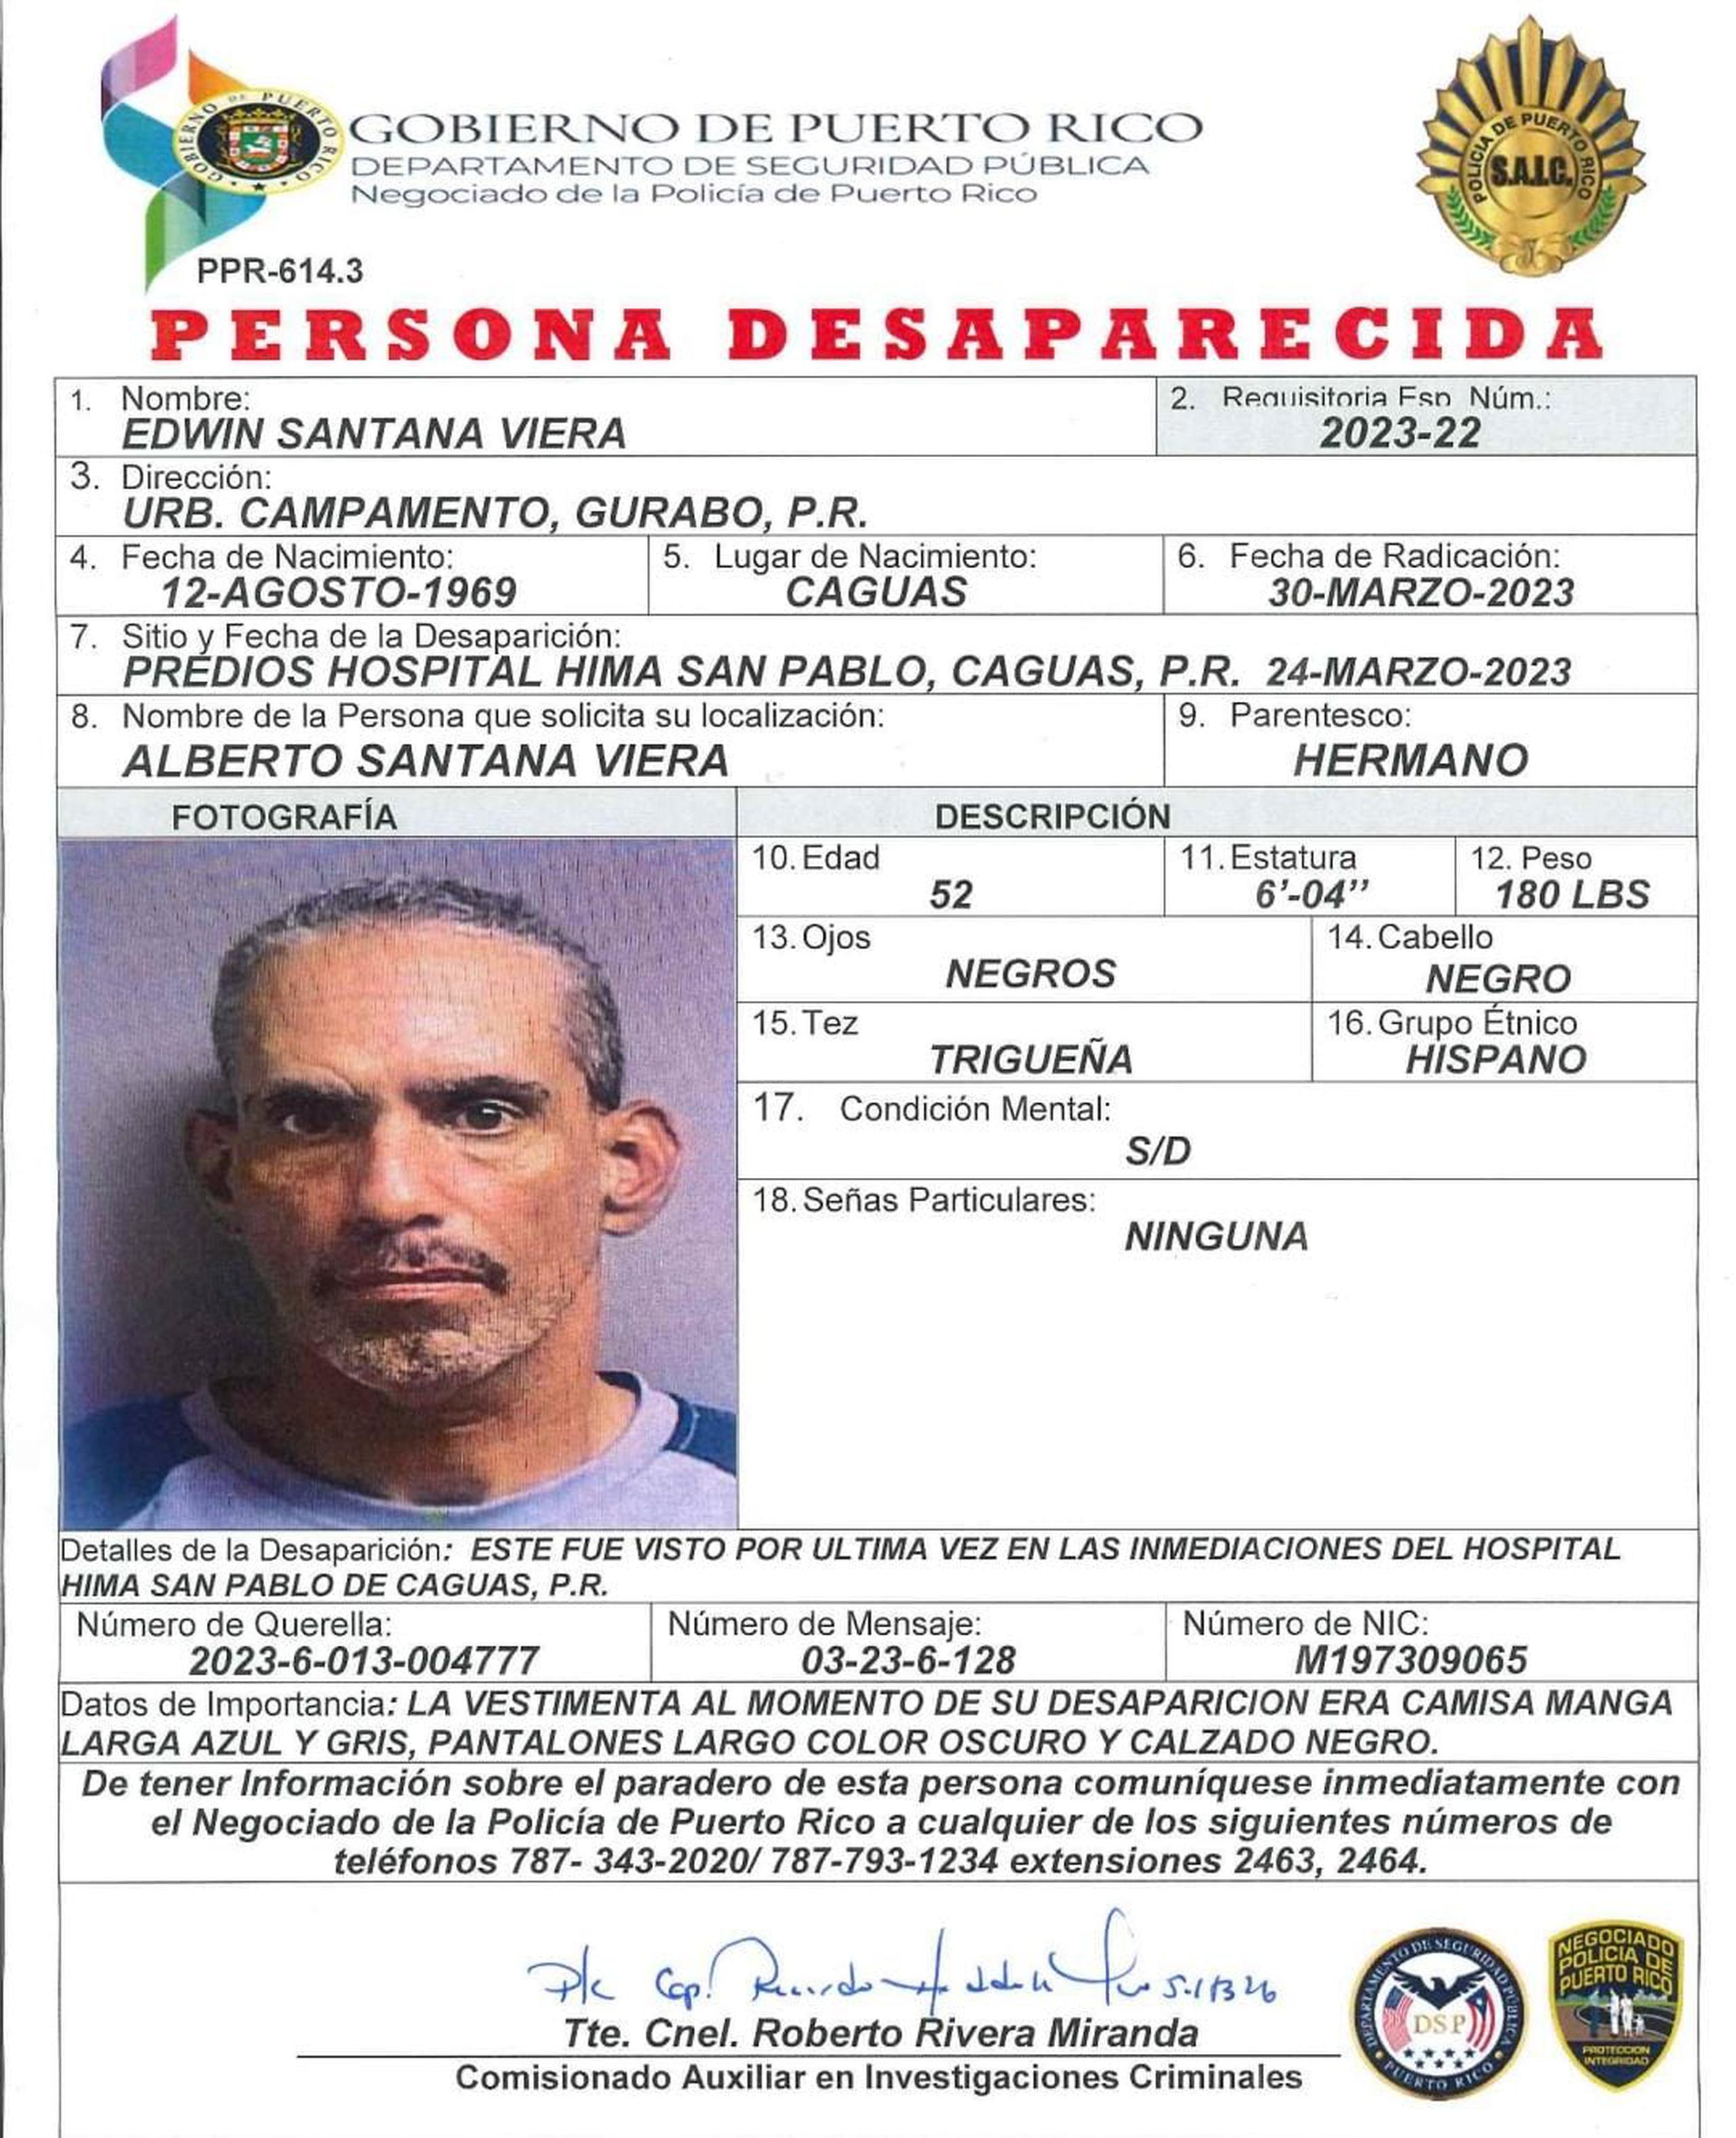 Edwin Santana Viera, de 52 años, fue visto por última vez el 24 de marzo, en los predios del hospital HIMA San Pablo, en Caguas.